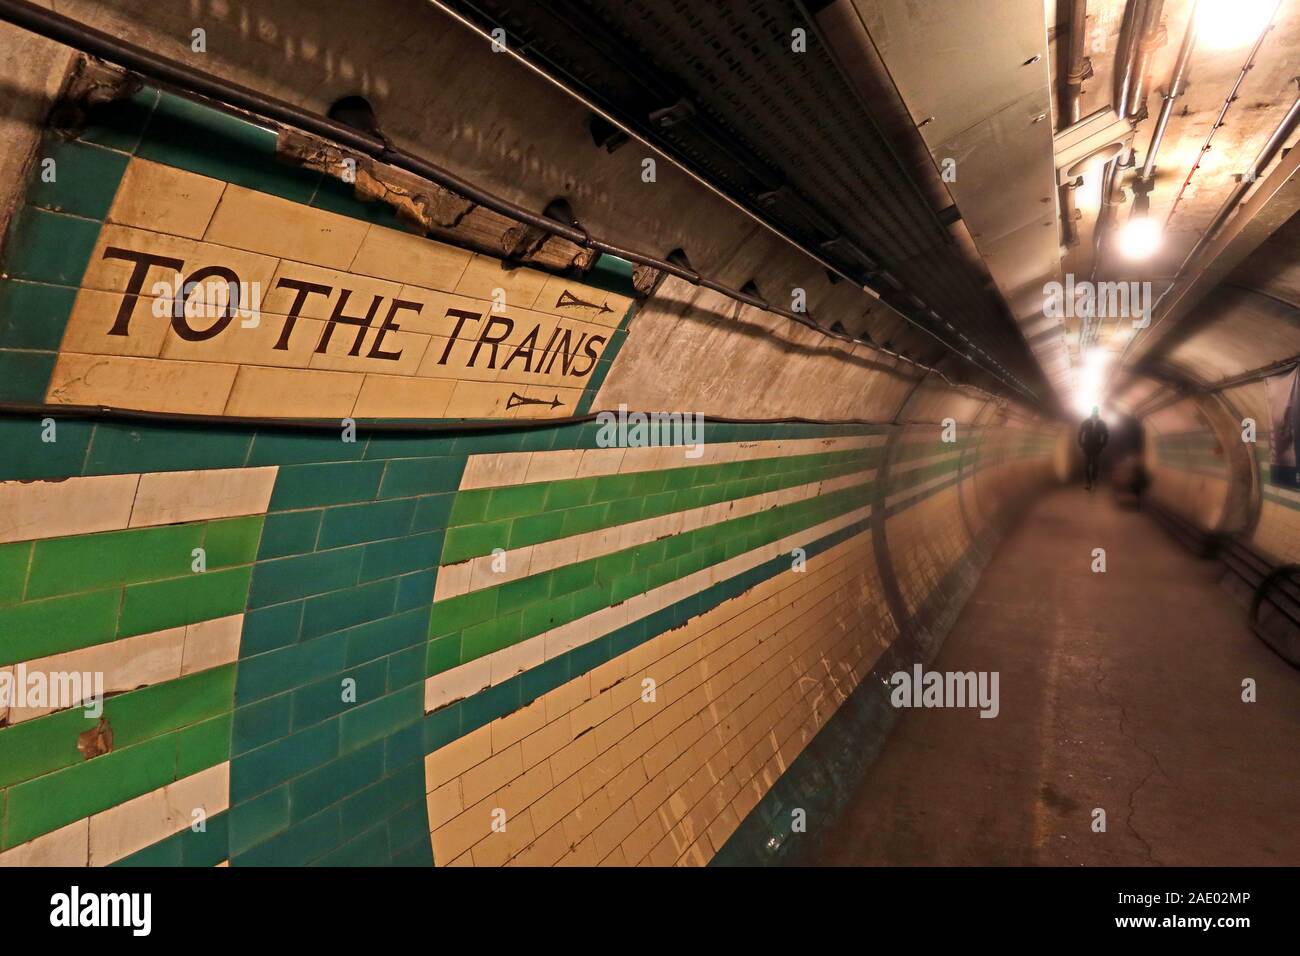 Zu den Zügen Zeichen, die Londoner U-Bahn Tunnel, die in der U-Bahn Station um Mitternacht, London, England, Großbritannien Stockfoto